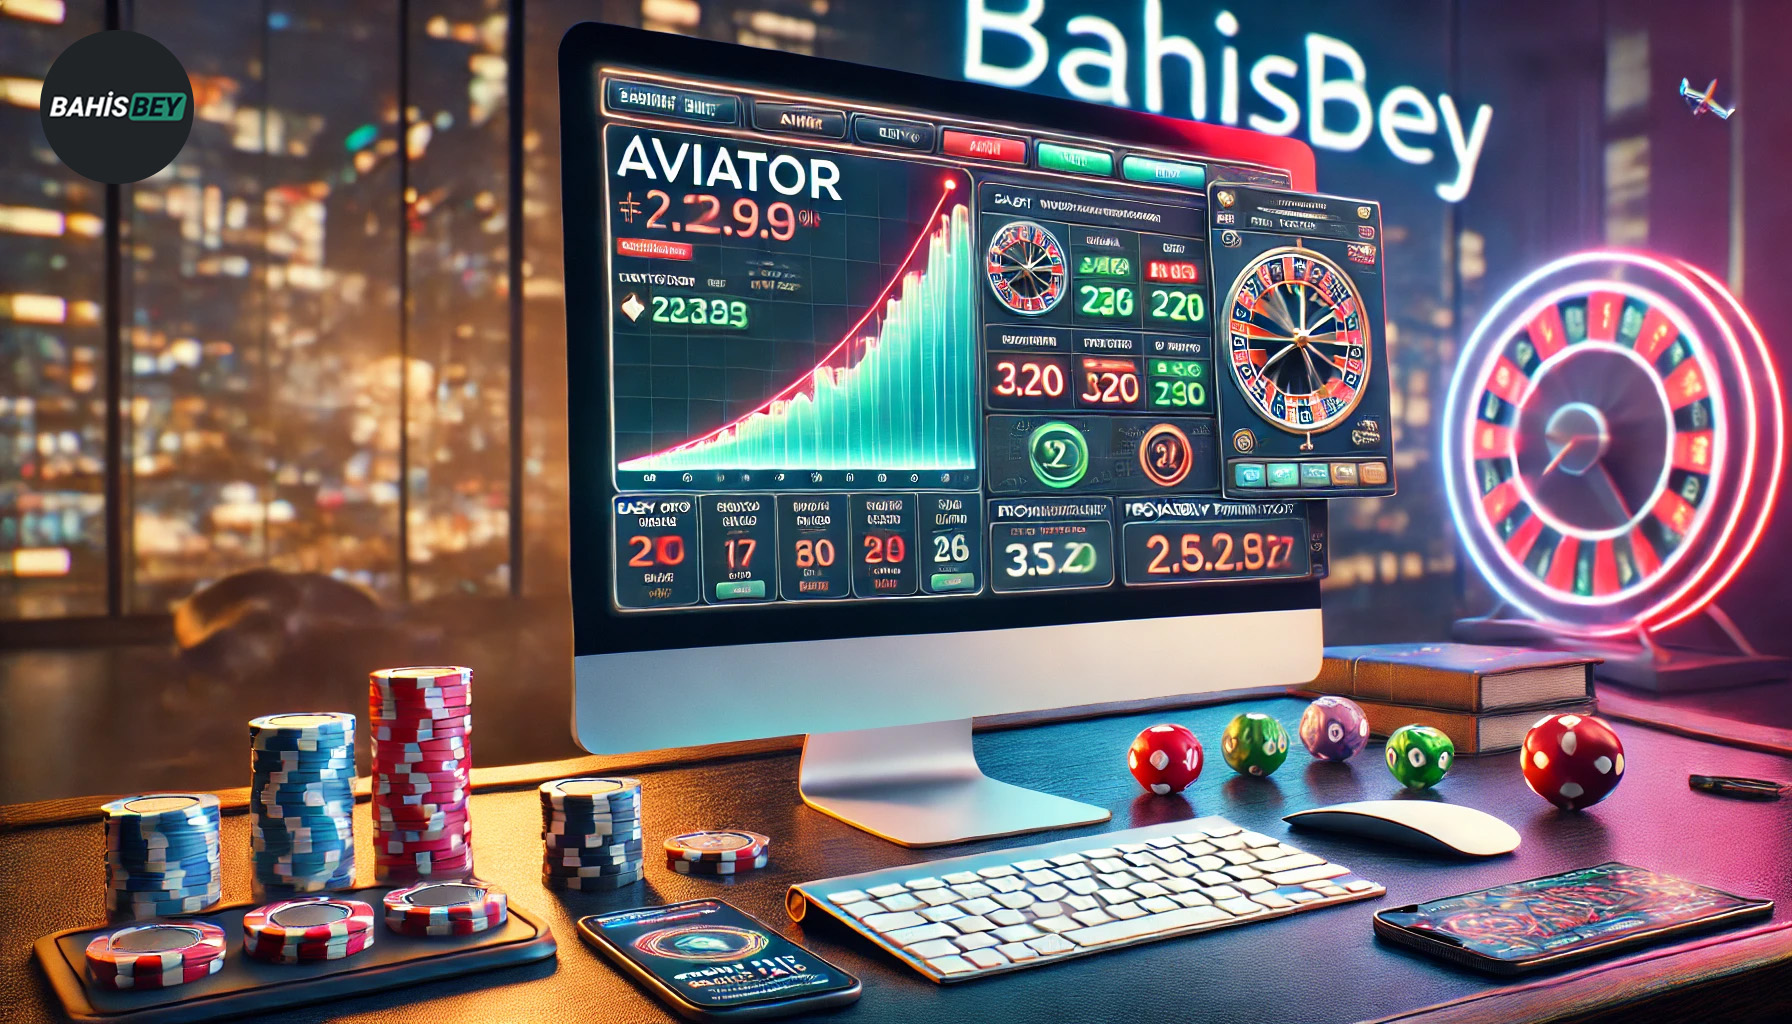 Bahisbey Aviator Oyunu İncelemesi: Heyecan ve Kazanç Dolu Uçuş